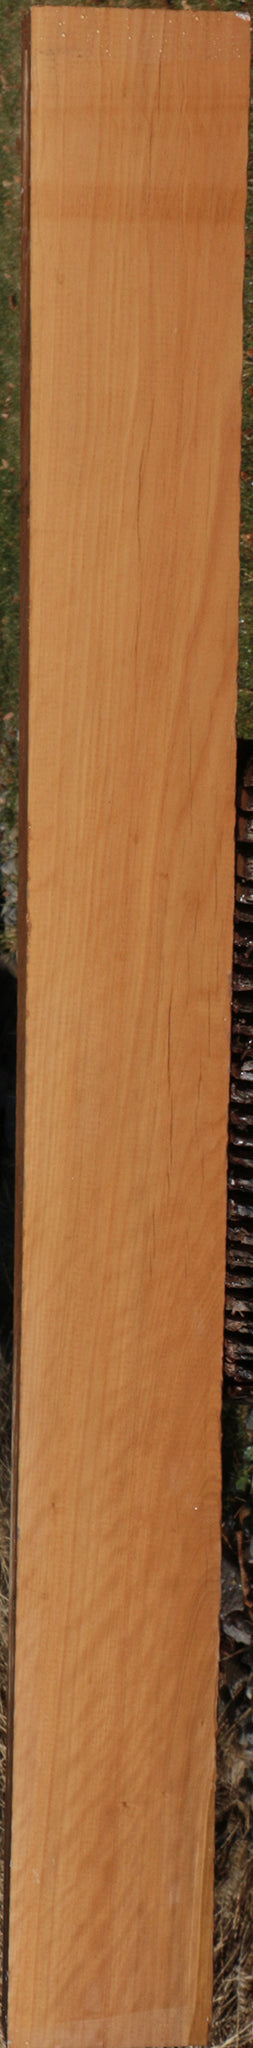 Exhibition Fiddleback Castello Boxwood Lumber